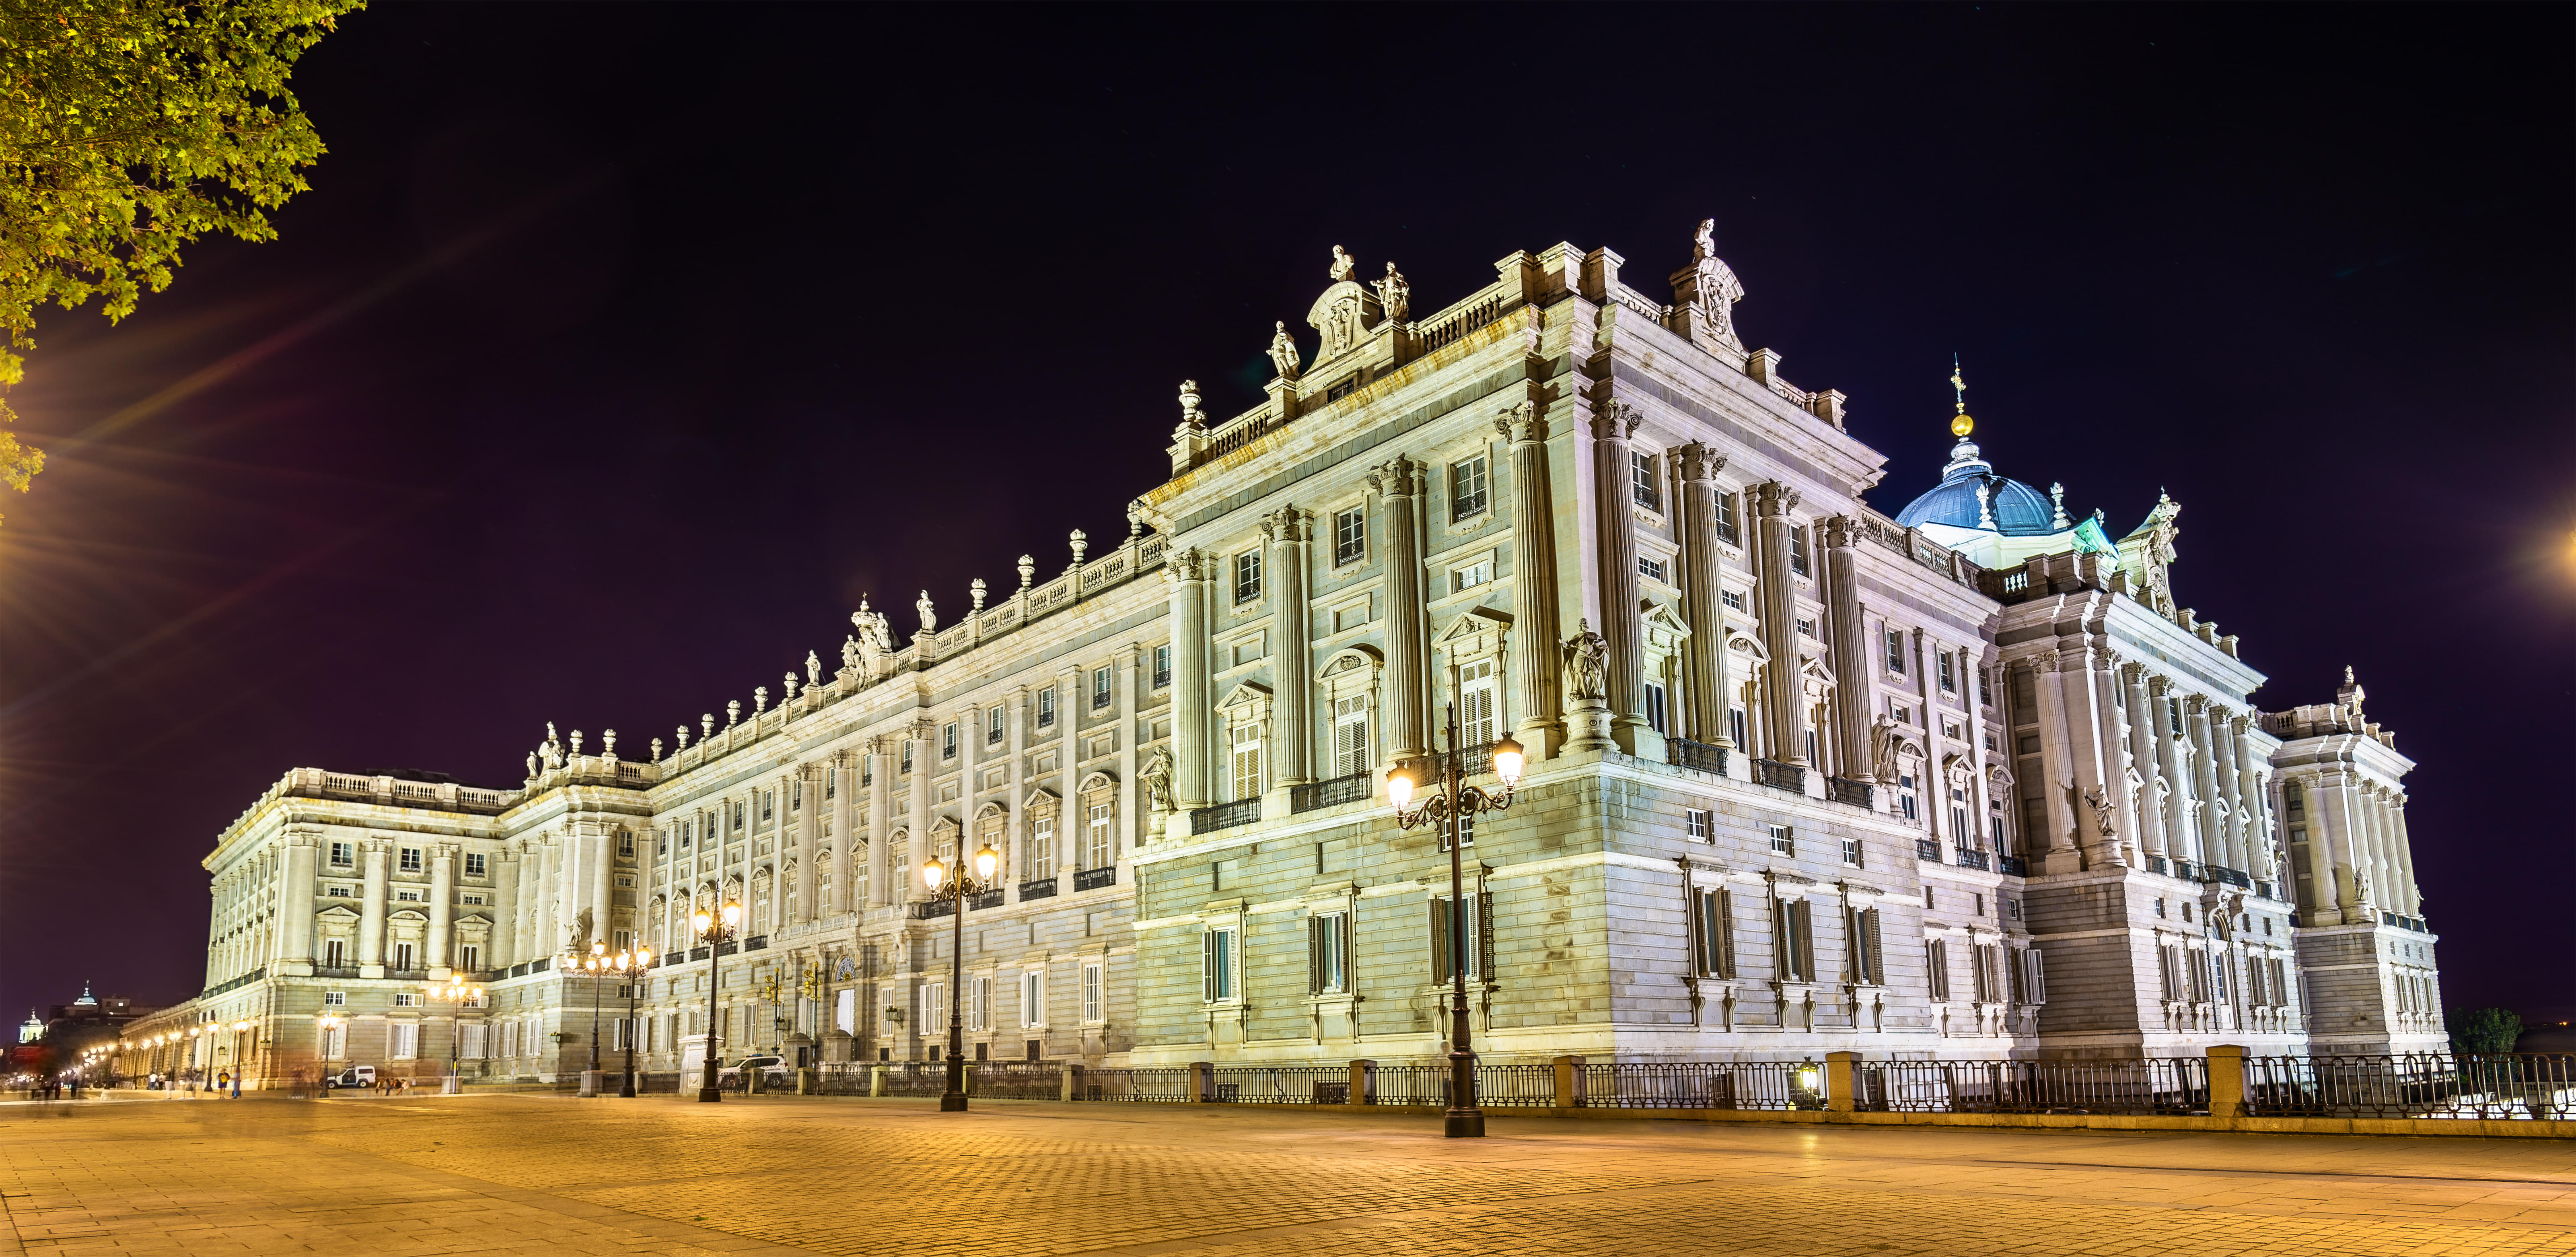 Royal Palace of Madrid at Night 